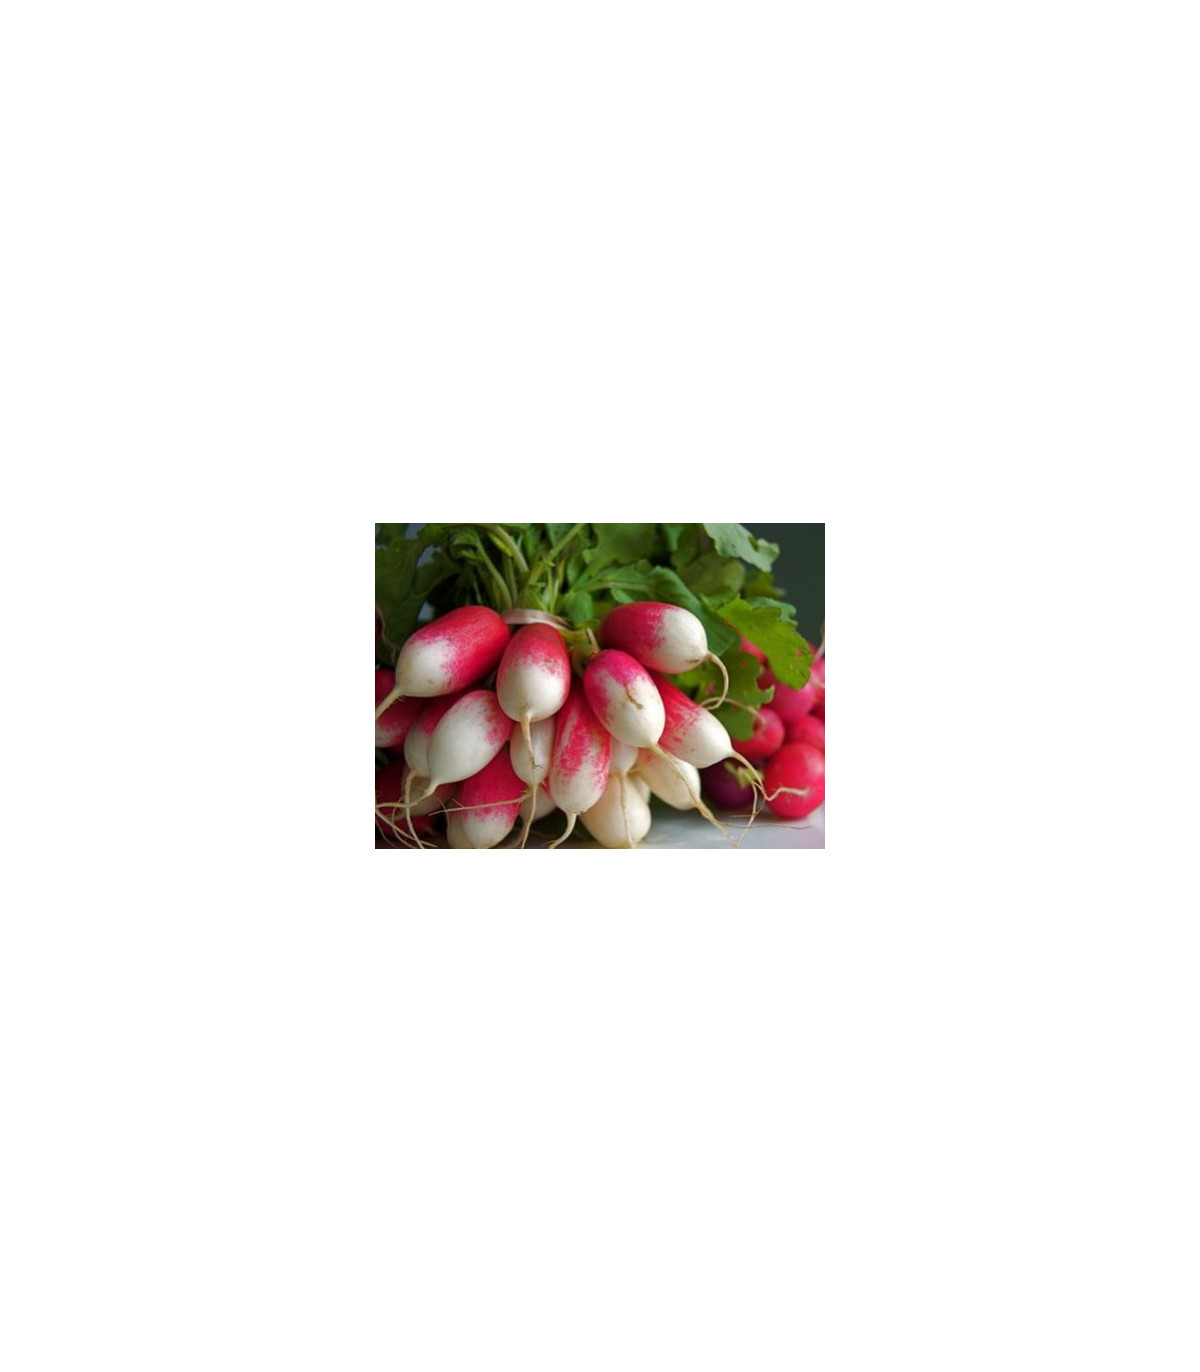 BIO Reďkev francúzska červenobiela - semená reďkovky - 0,3 g